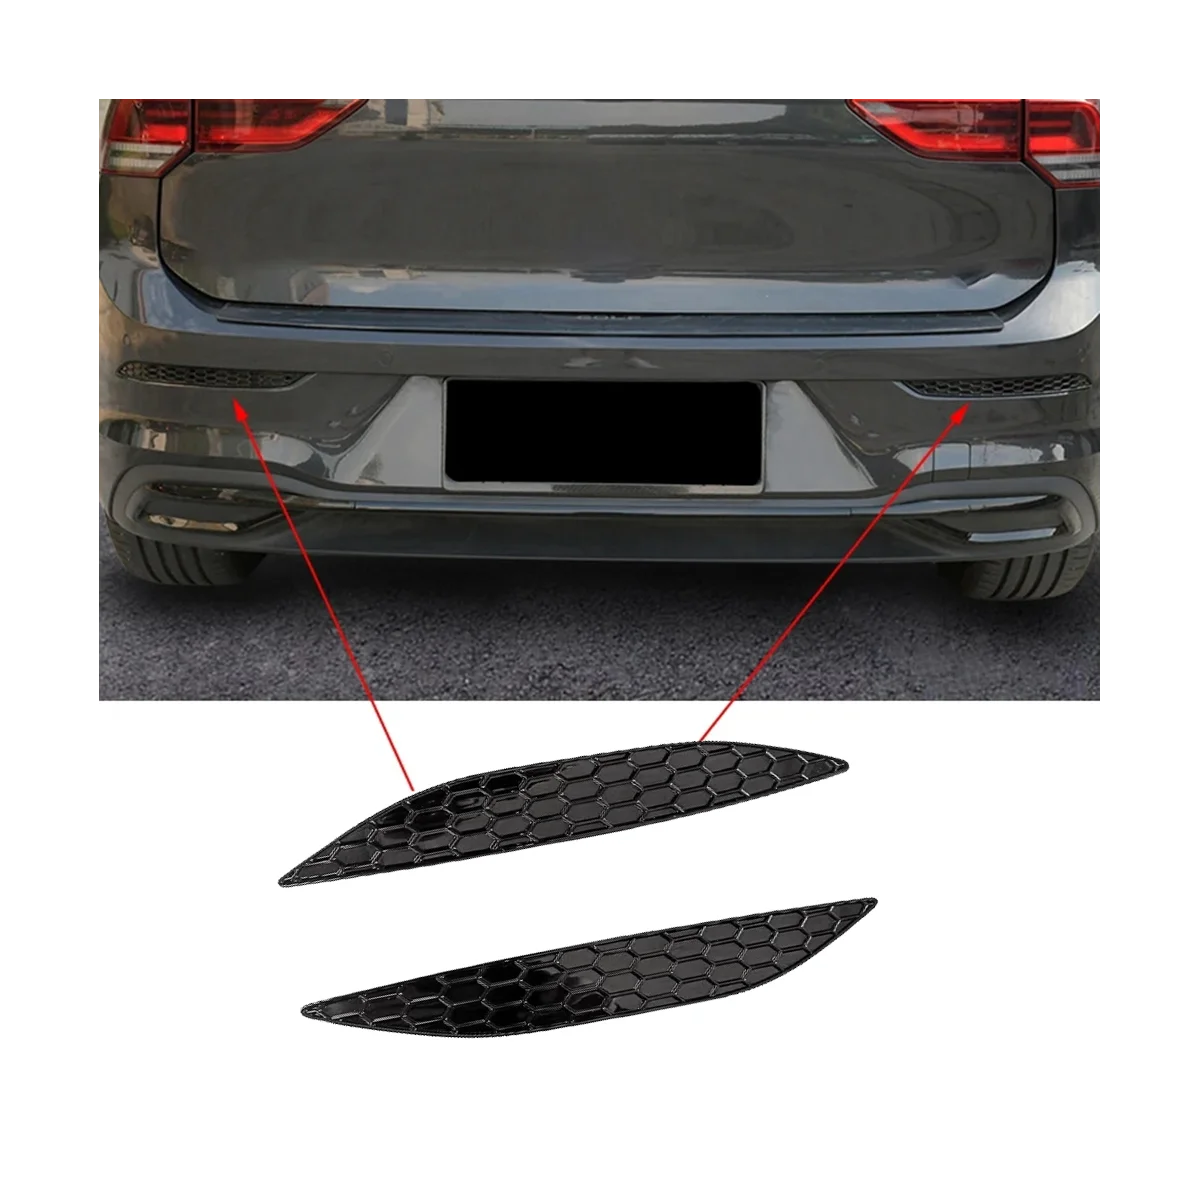 2 шт., Наклейка для отделки заднего противотуманного фонаря в виде сот, наклейка для VW Golf MK7 7R/Rline 2014-2018, Полосы заднего бампера